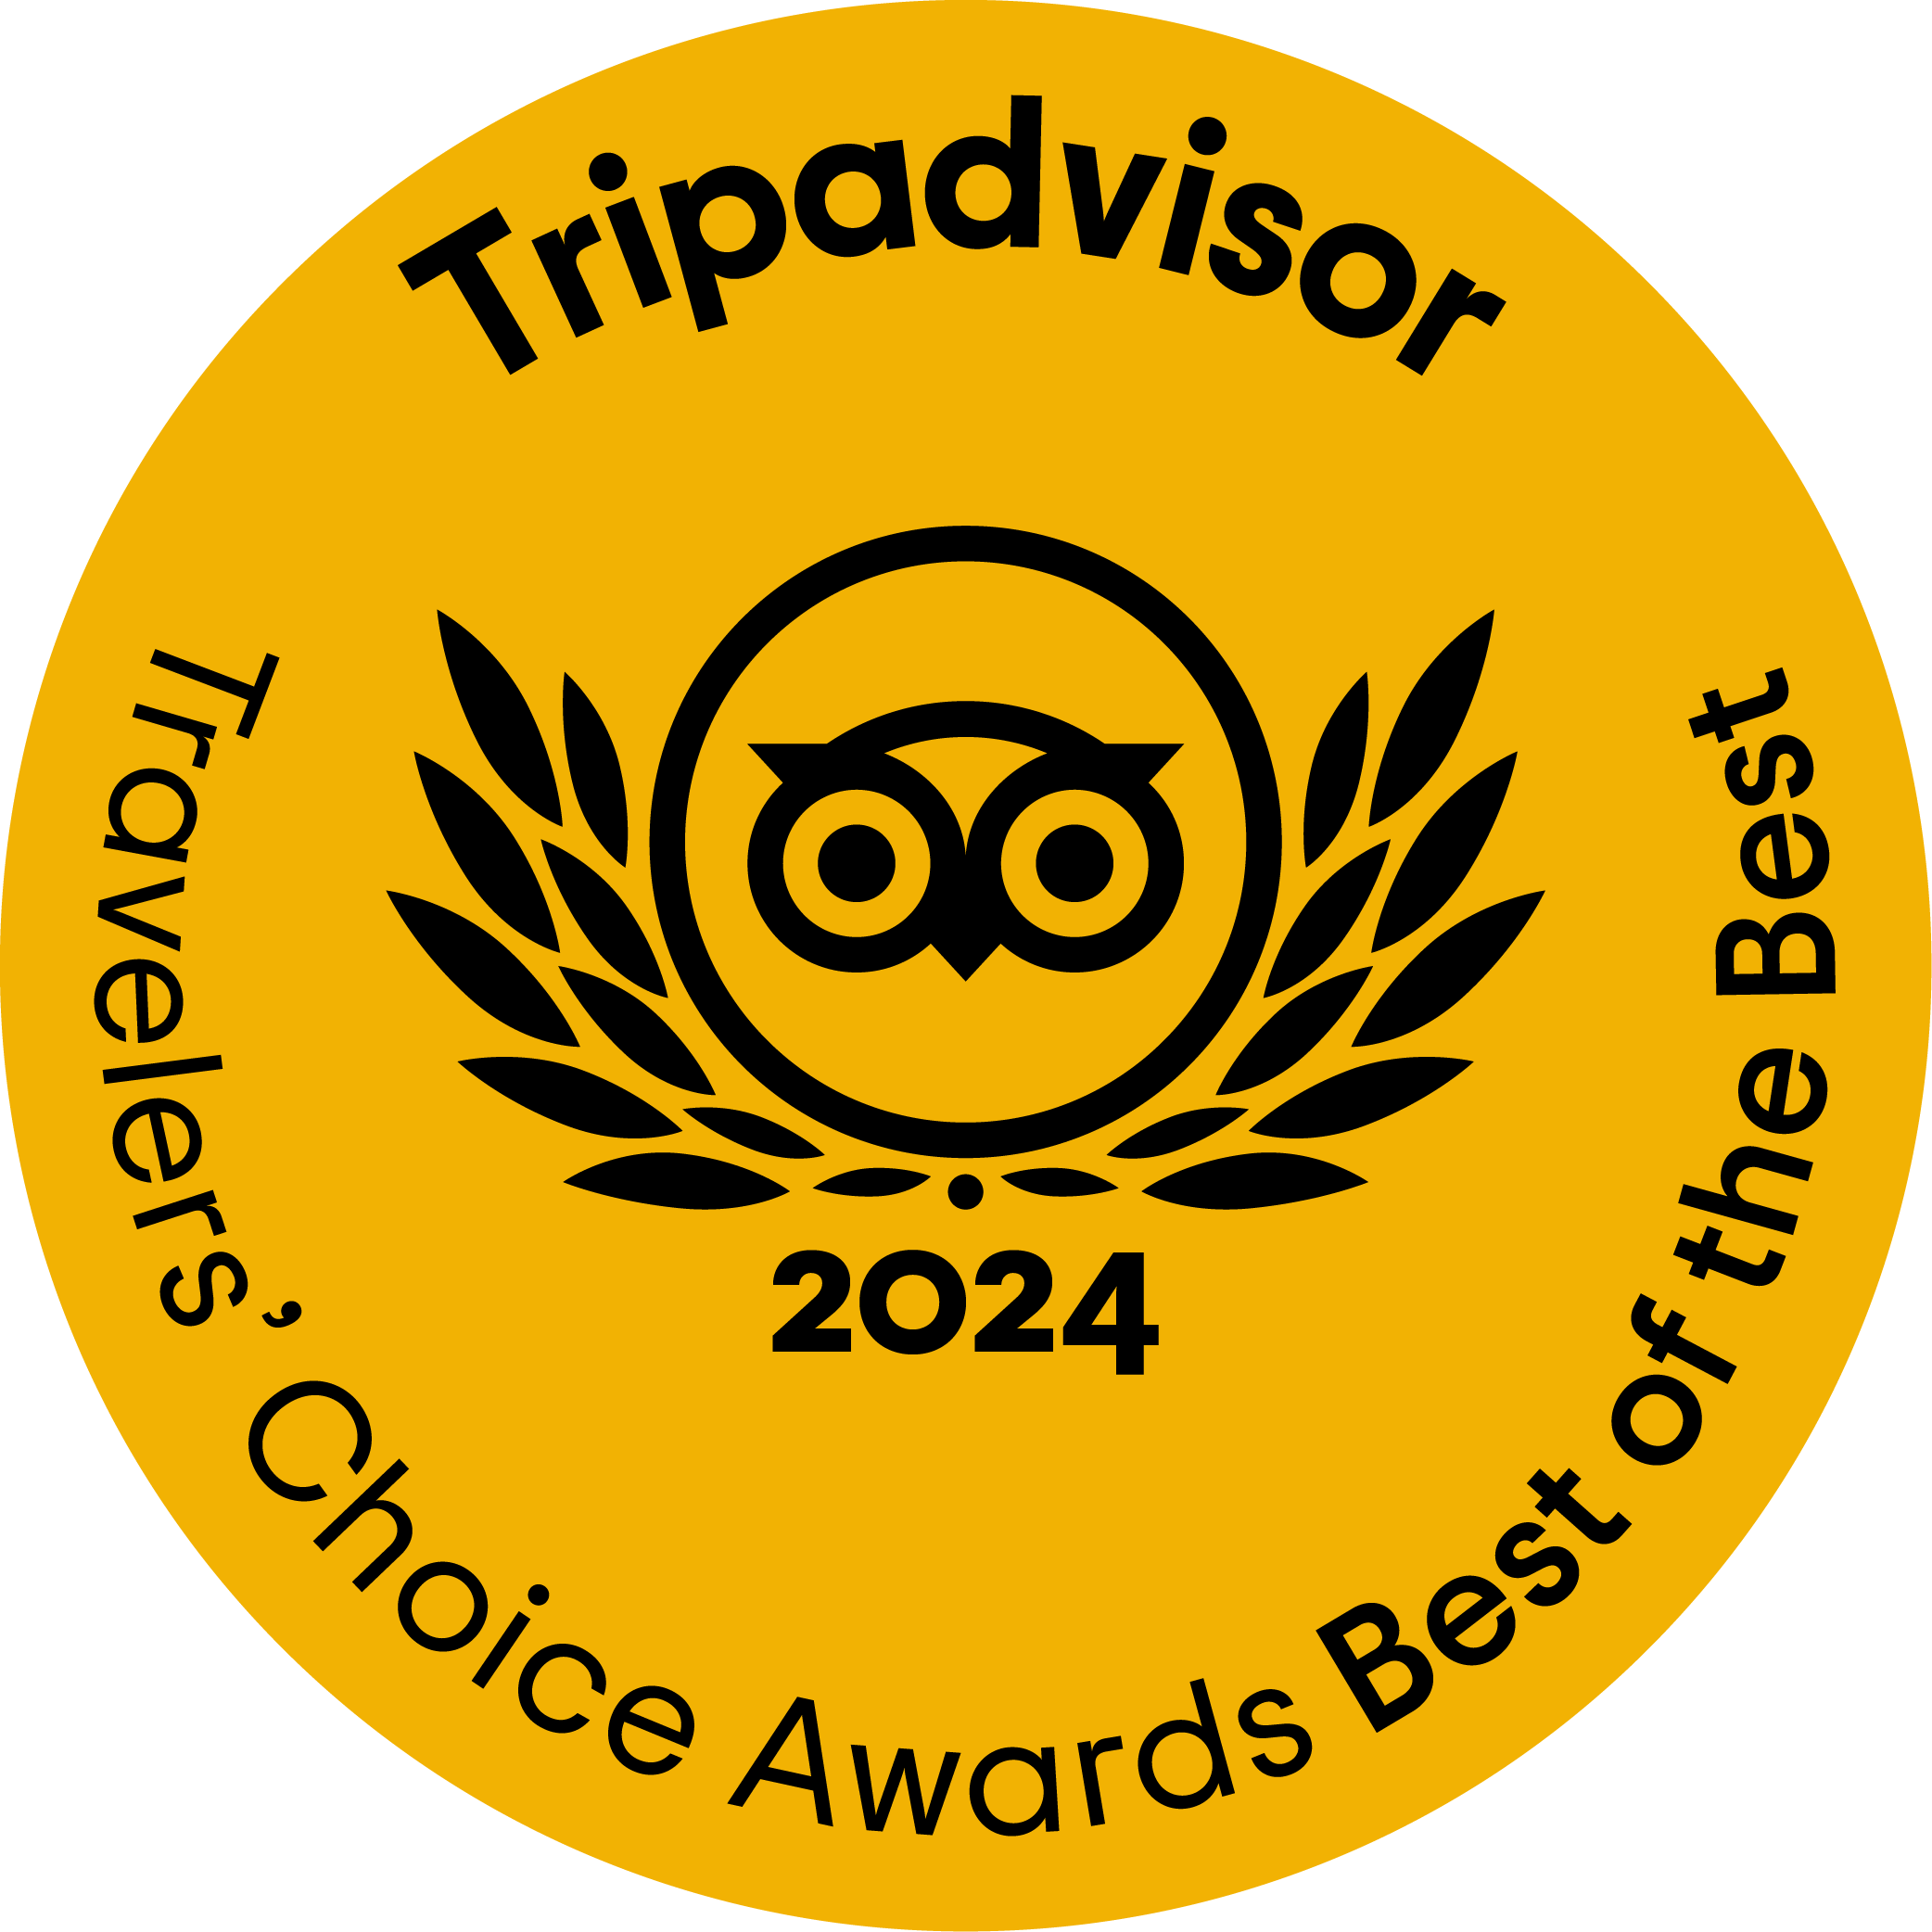 Tripadvisor best of the Best Awards 2024